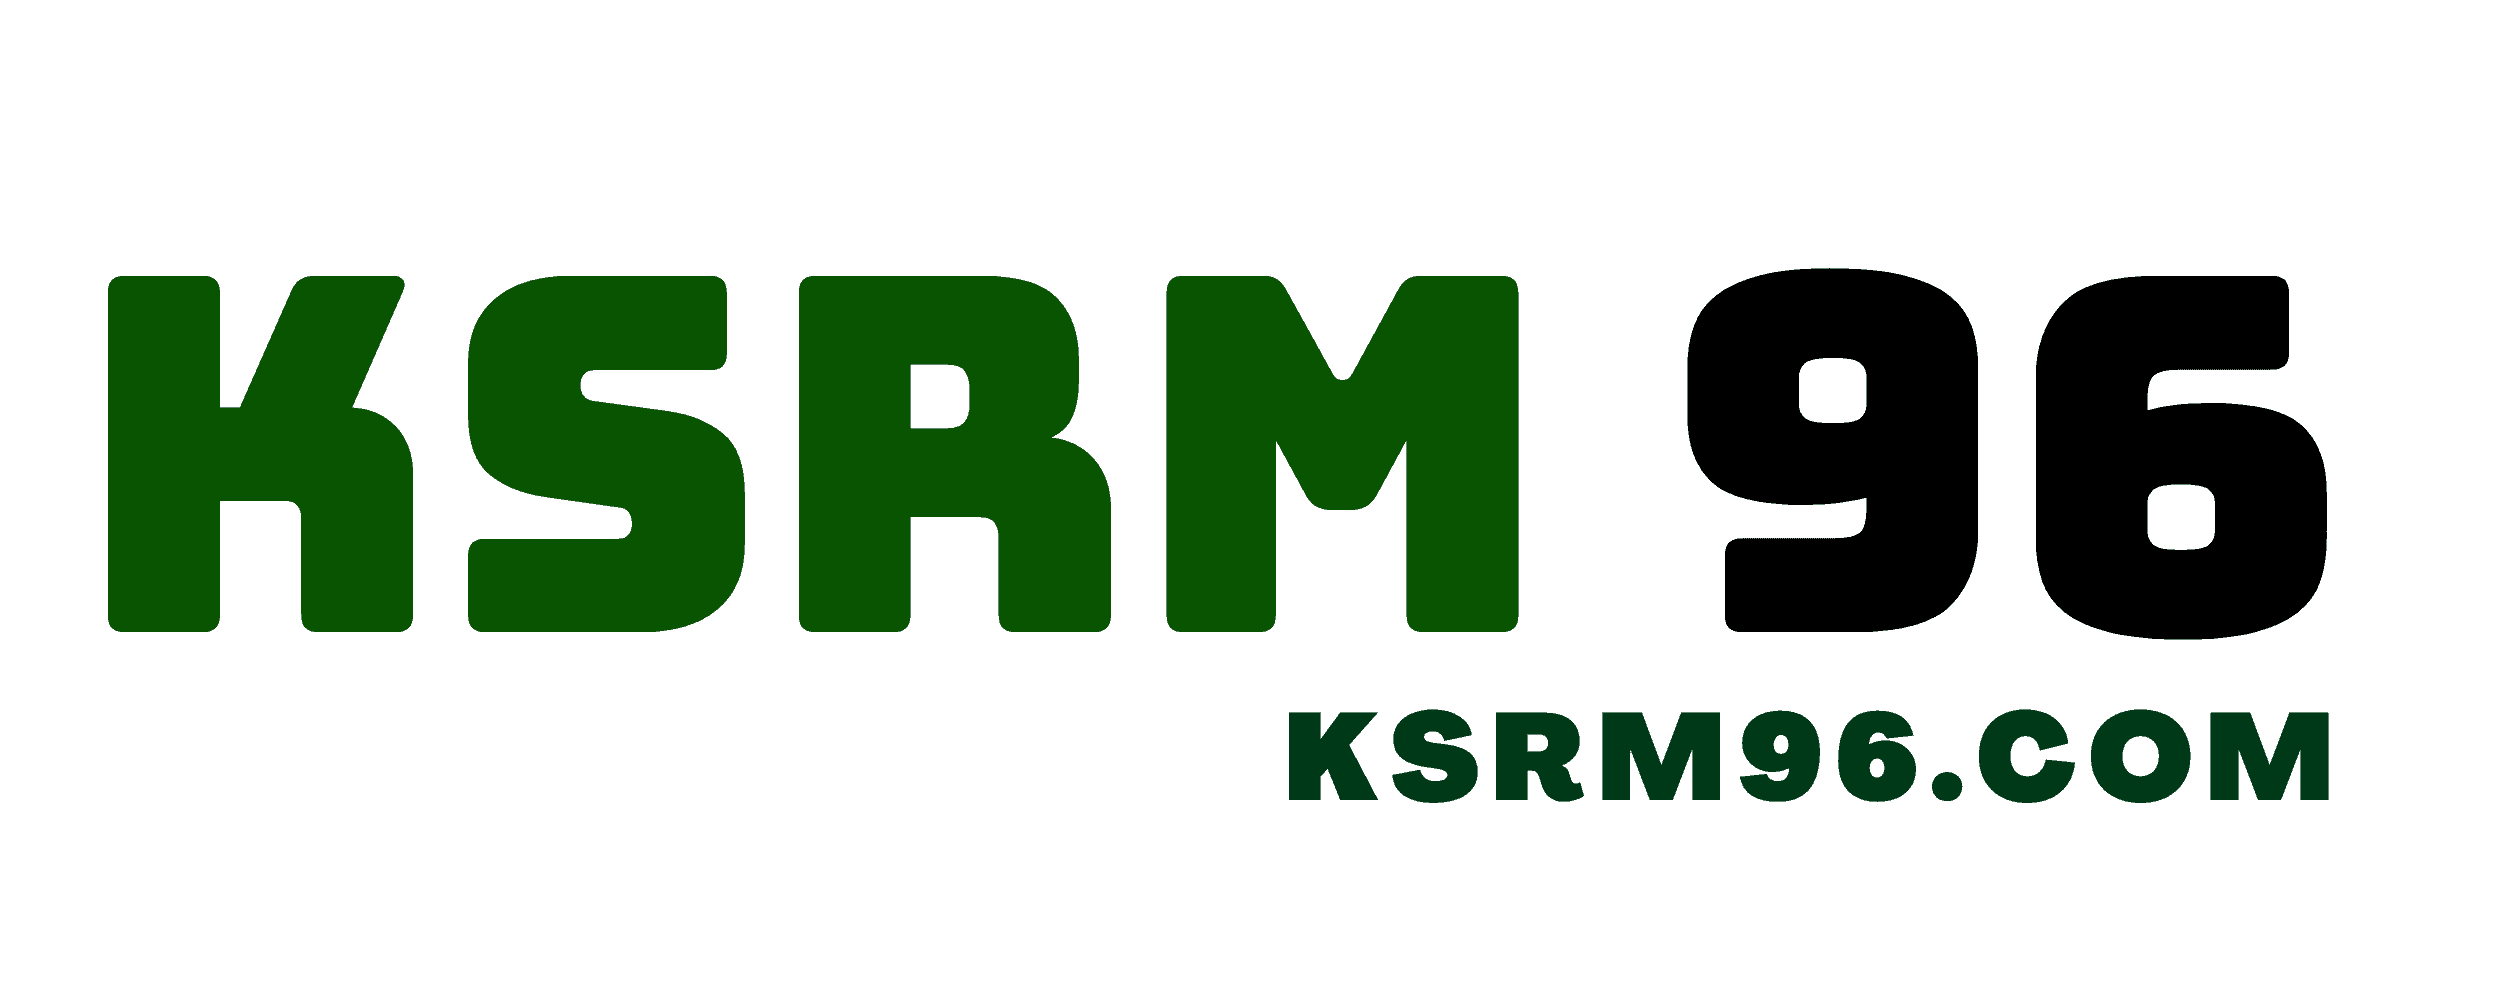 KSRM96